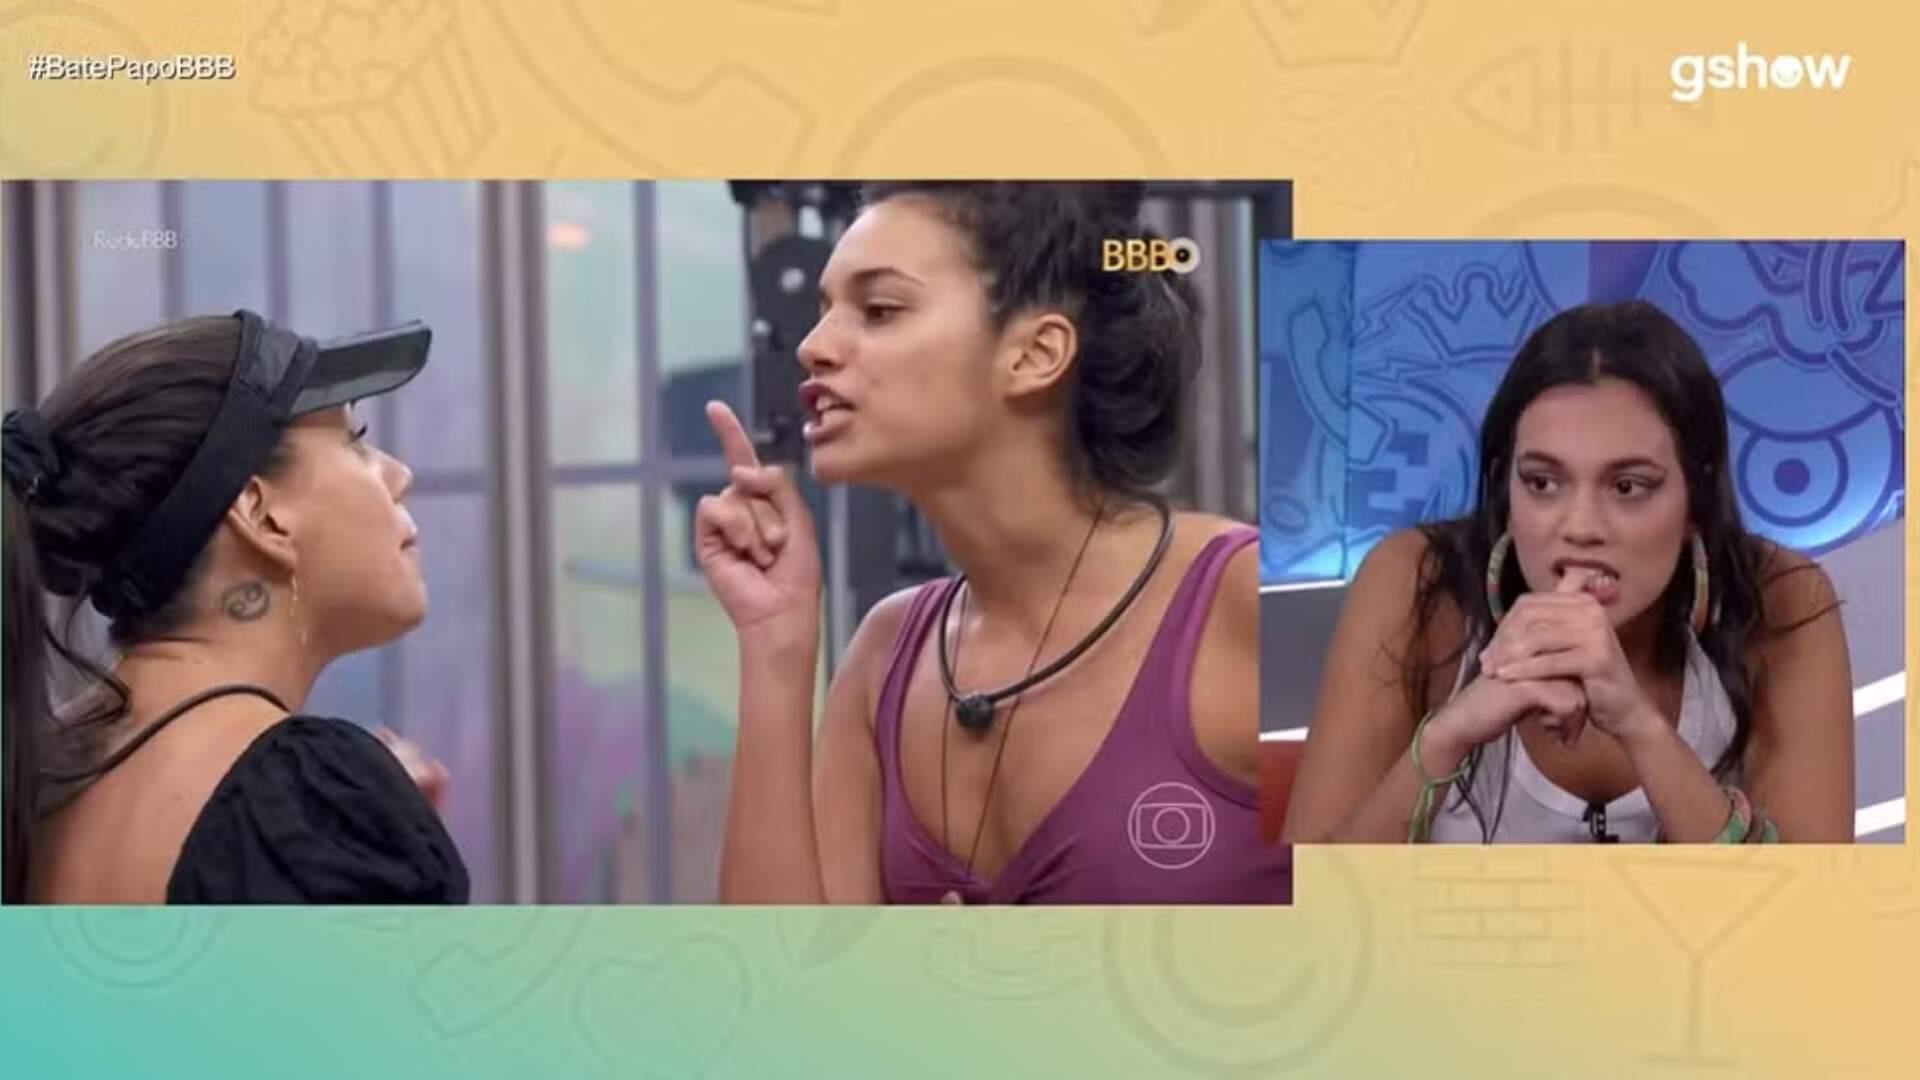 BBB 24: Alane revela que descontentamento com seu corpo motivou a discussão com Fernanda no reality show - Metropolitana FM